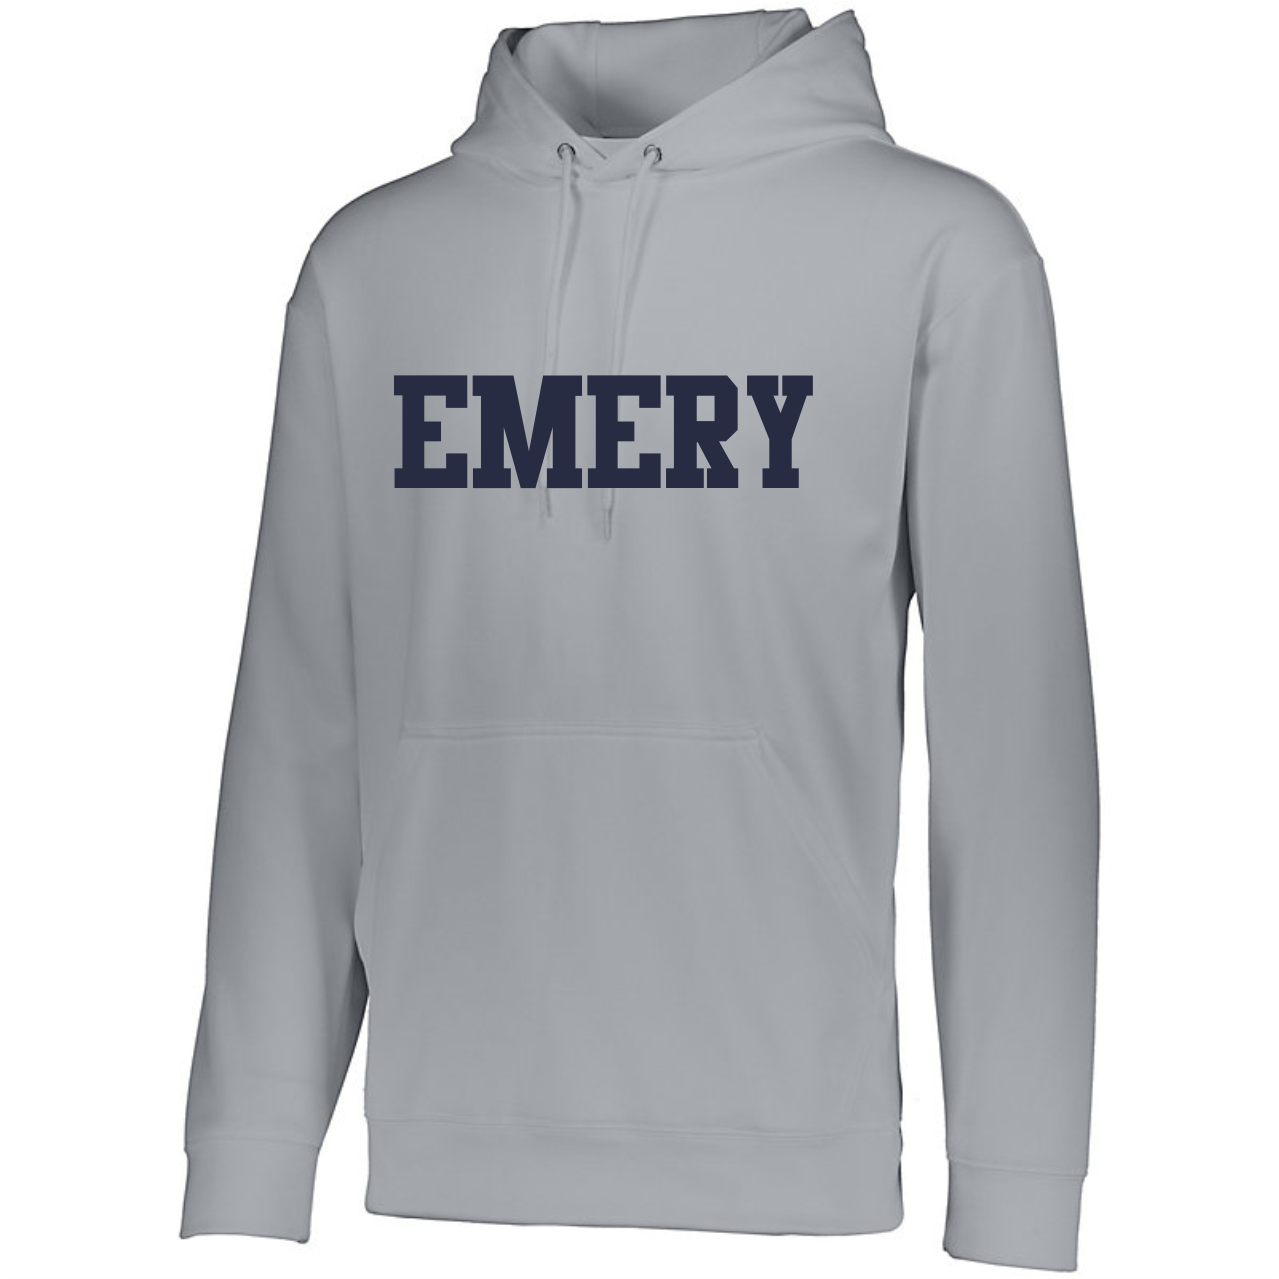 emry hoodies